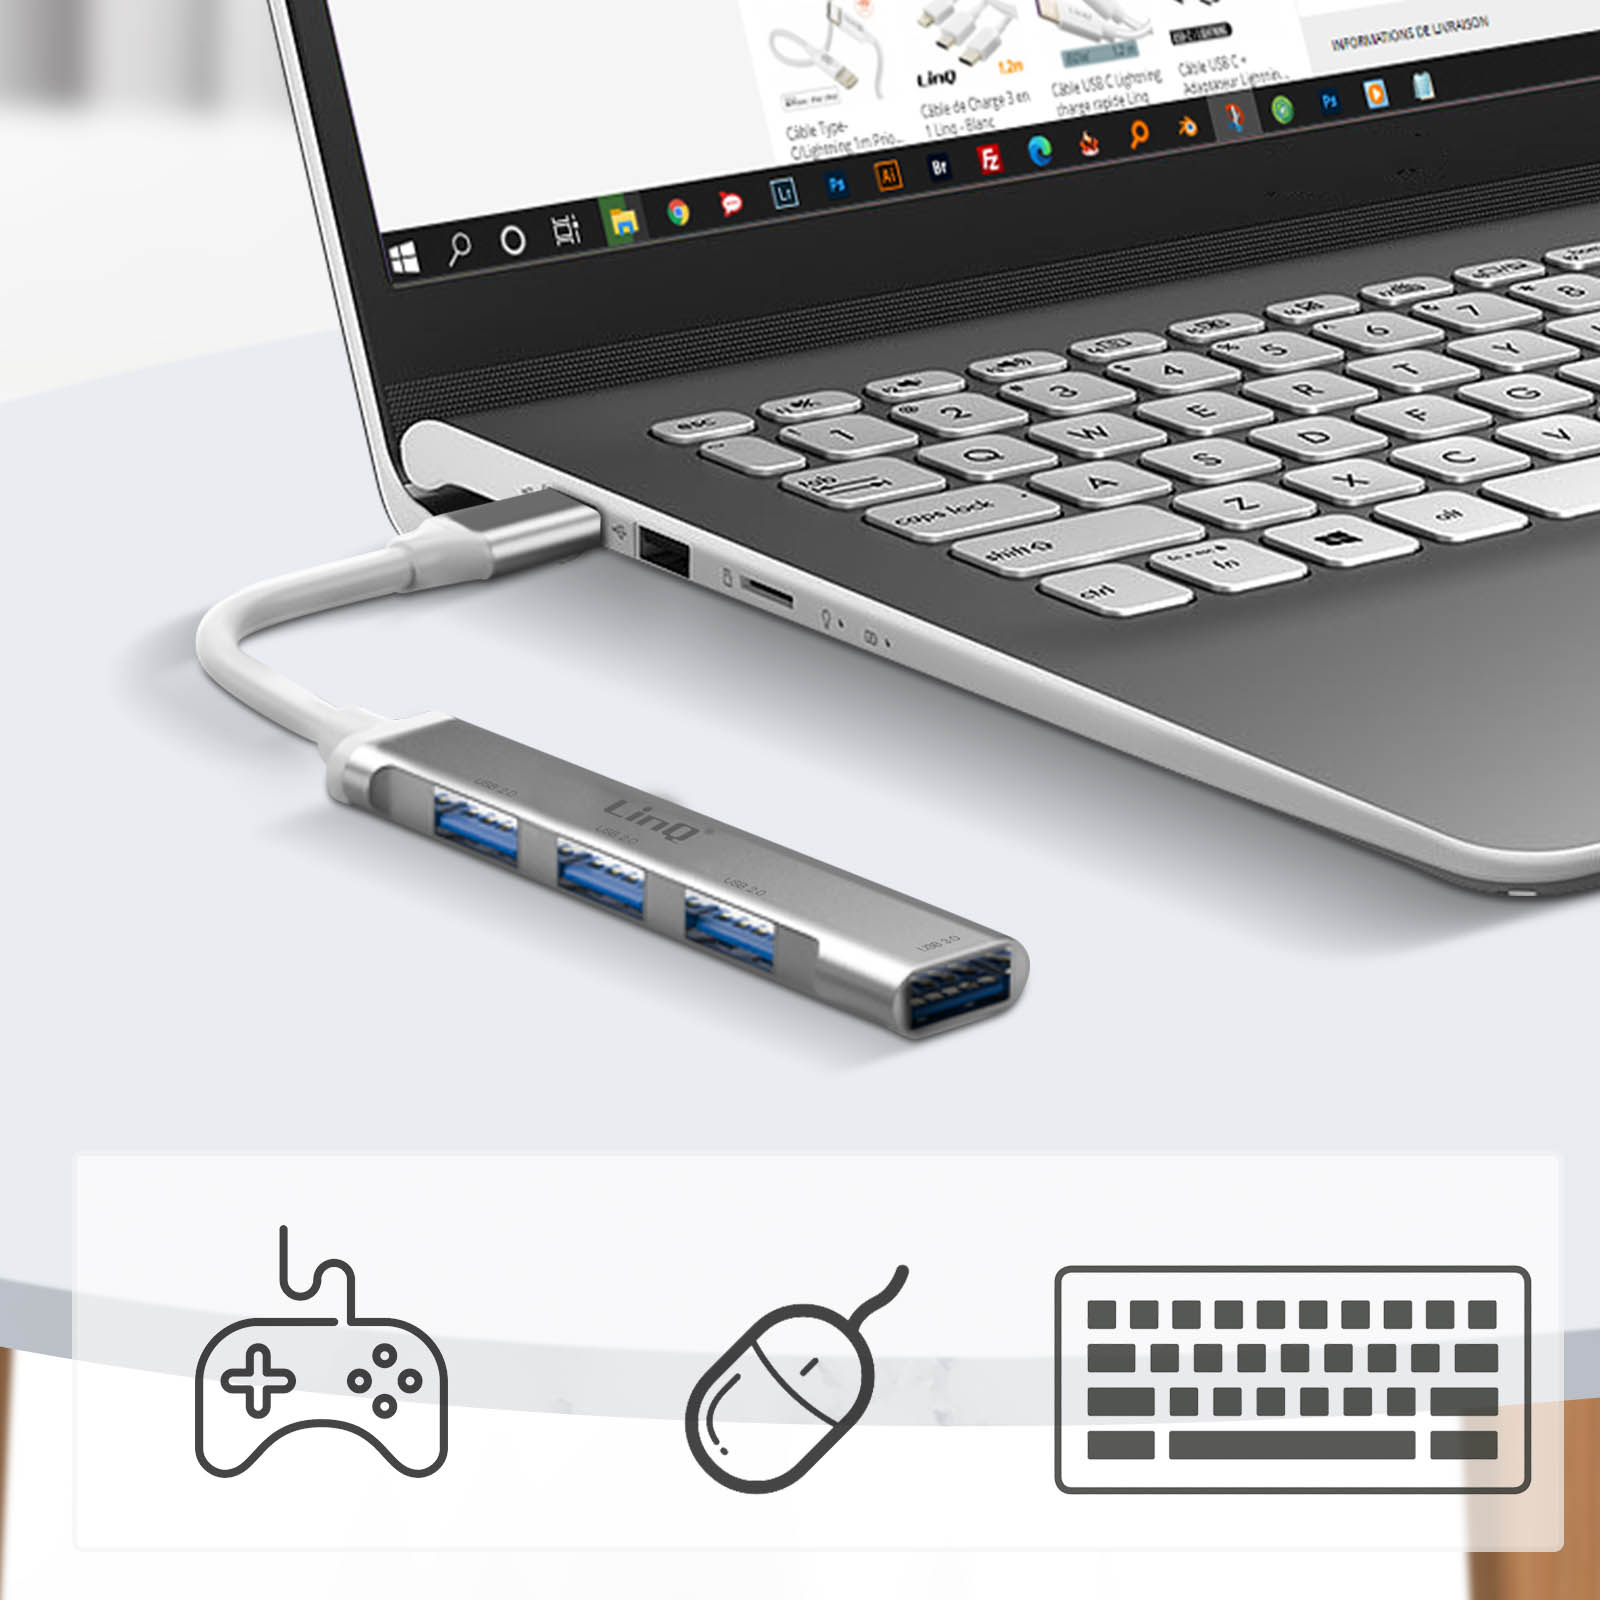 Hub USB auf 3.0 USB-Hub Universal, Weiß 5Gbps 4x Anschlüsse LINQ USB